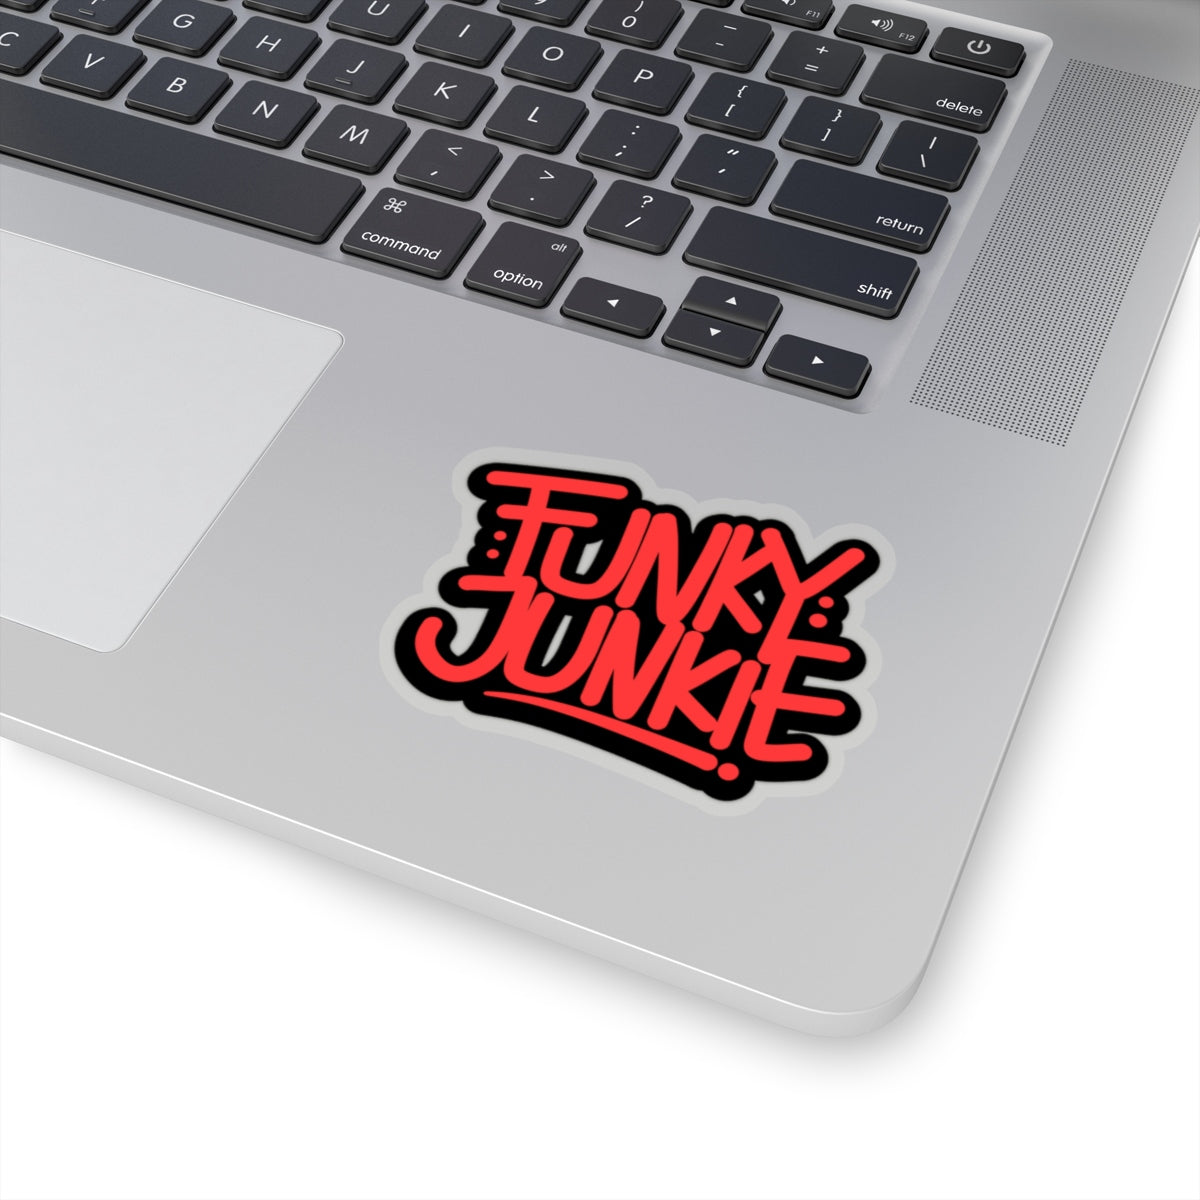 Funky Junkie Sticker - FunkyJunkieCo